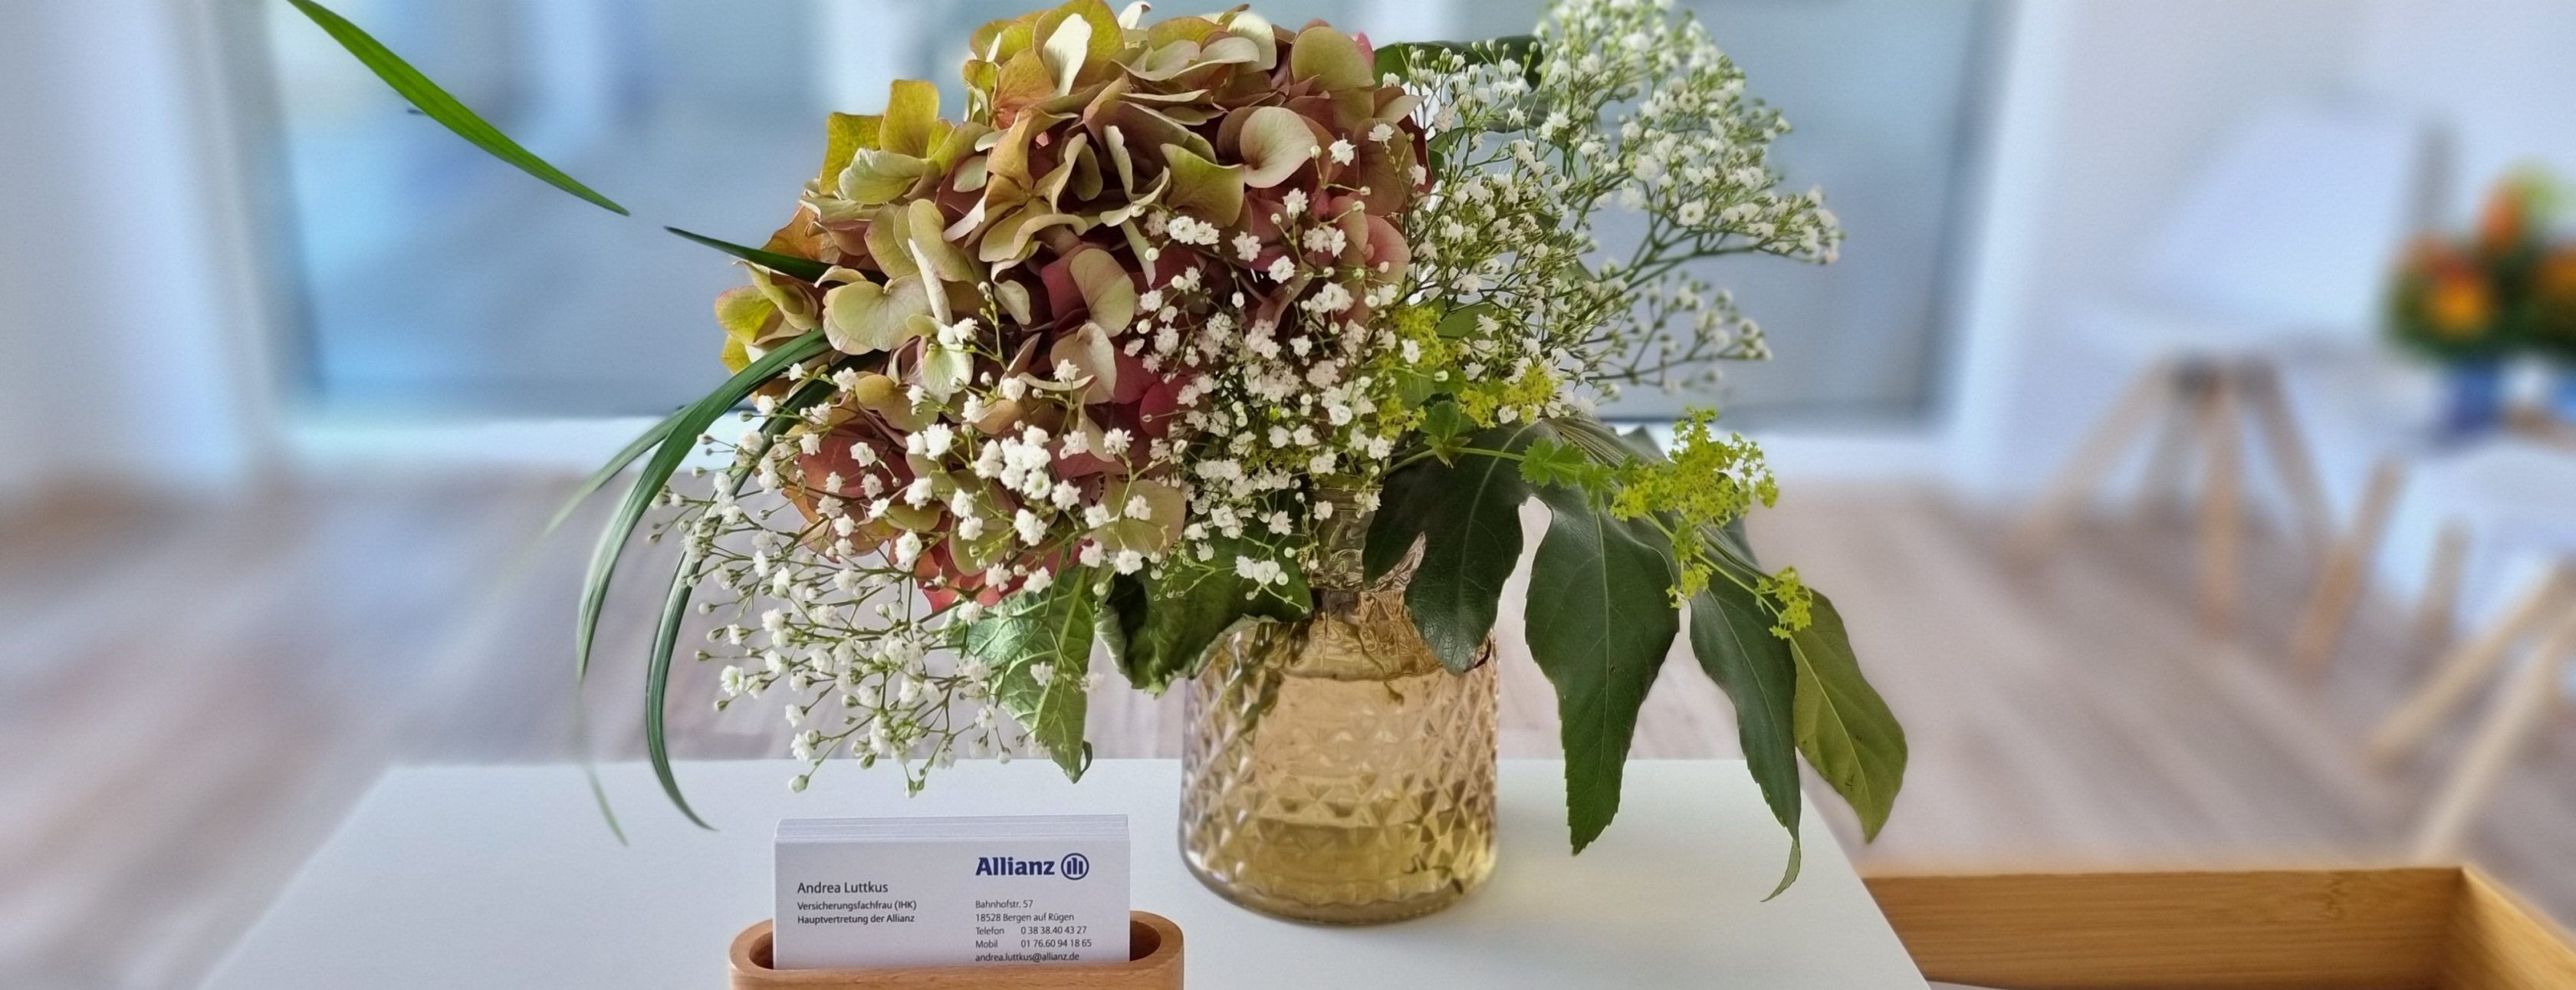 Allianz Versicherung Andrea Luttkus Bergen auf Rügen - Freundlicher Blumenstrauß in hellem, modernen Büro